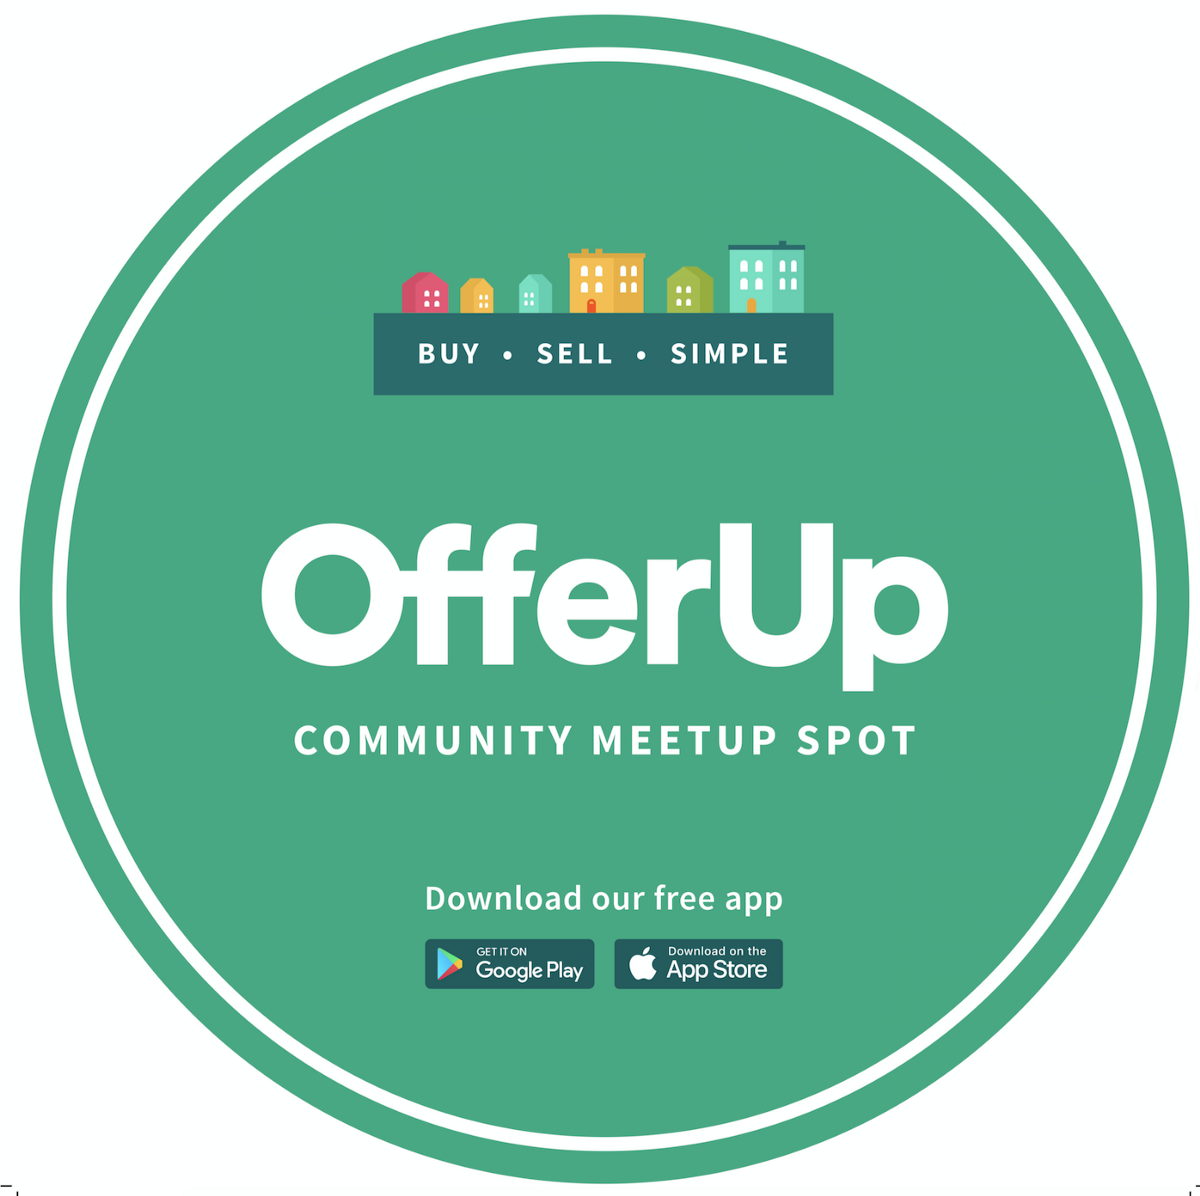 offerup meetup spot community sign resource